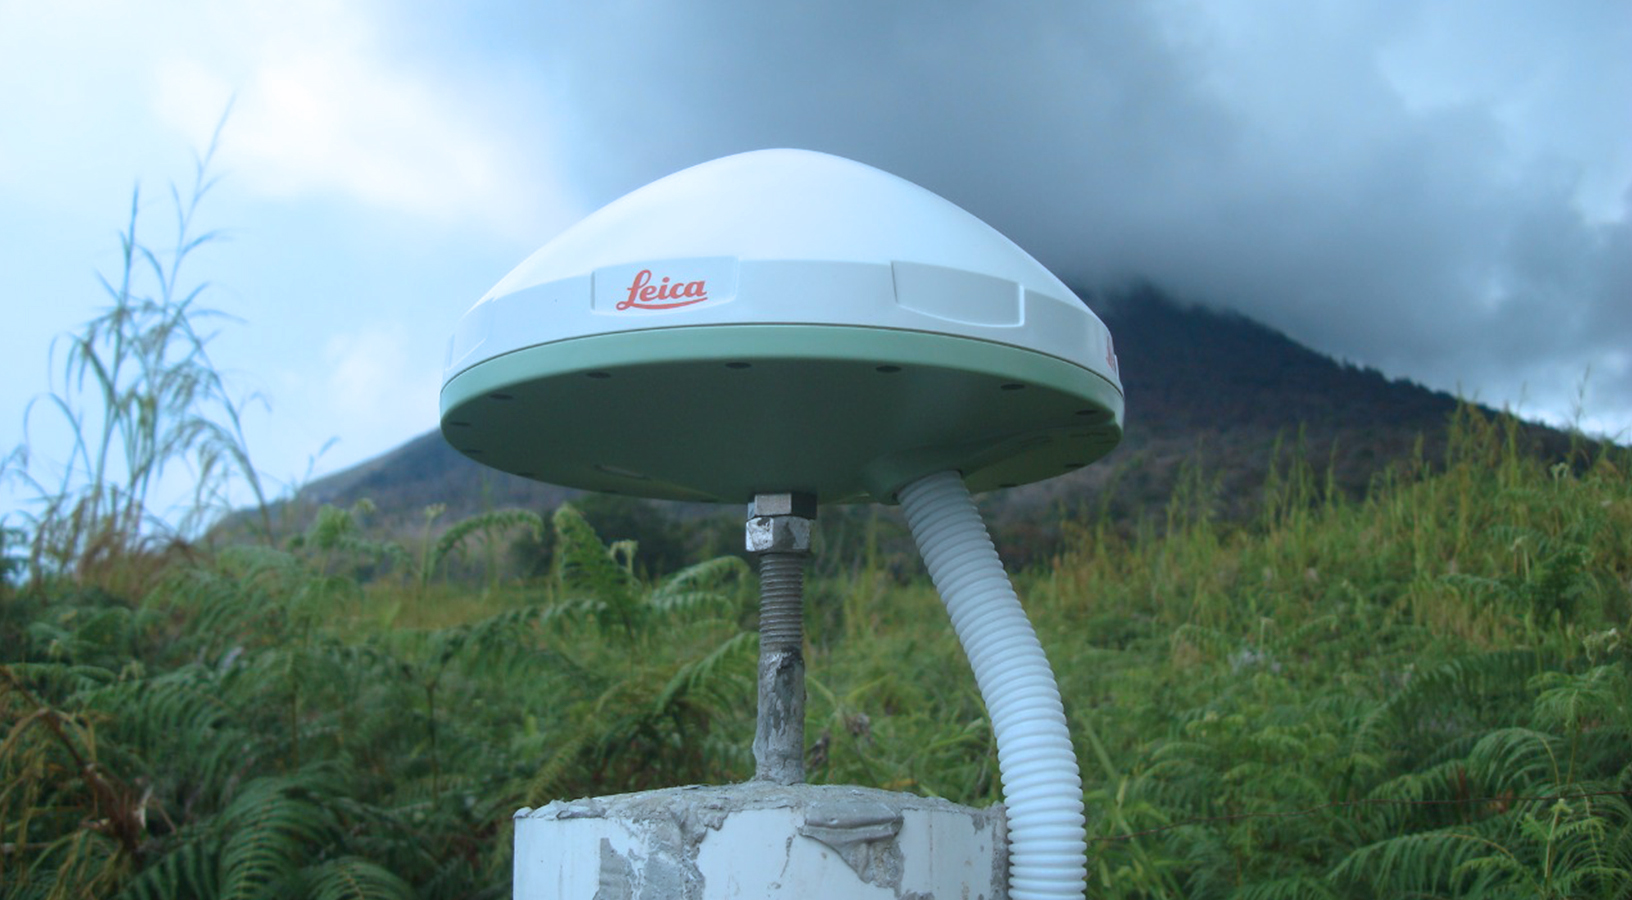 monitoraggio ambientale tramite GNSS